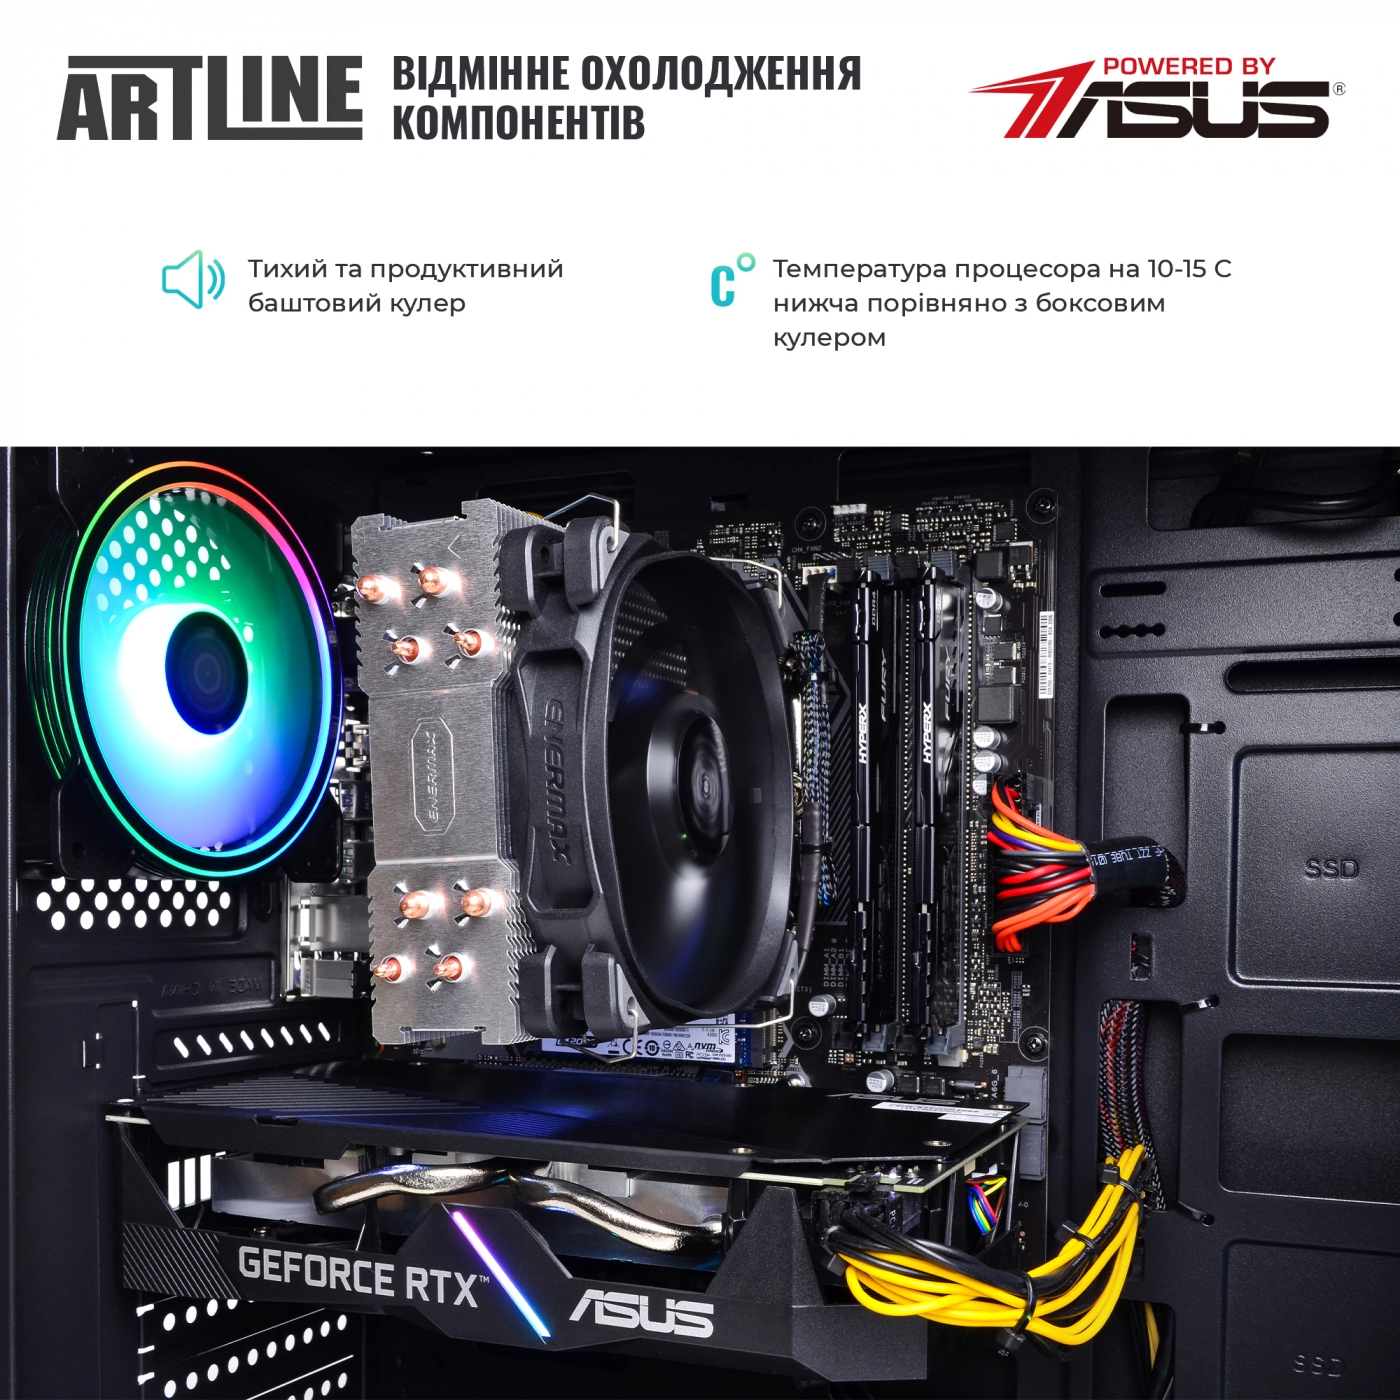 Купить Компьютер ARTLINE Gaming X59v30 - фото 8